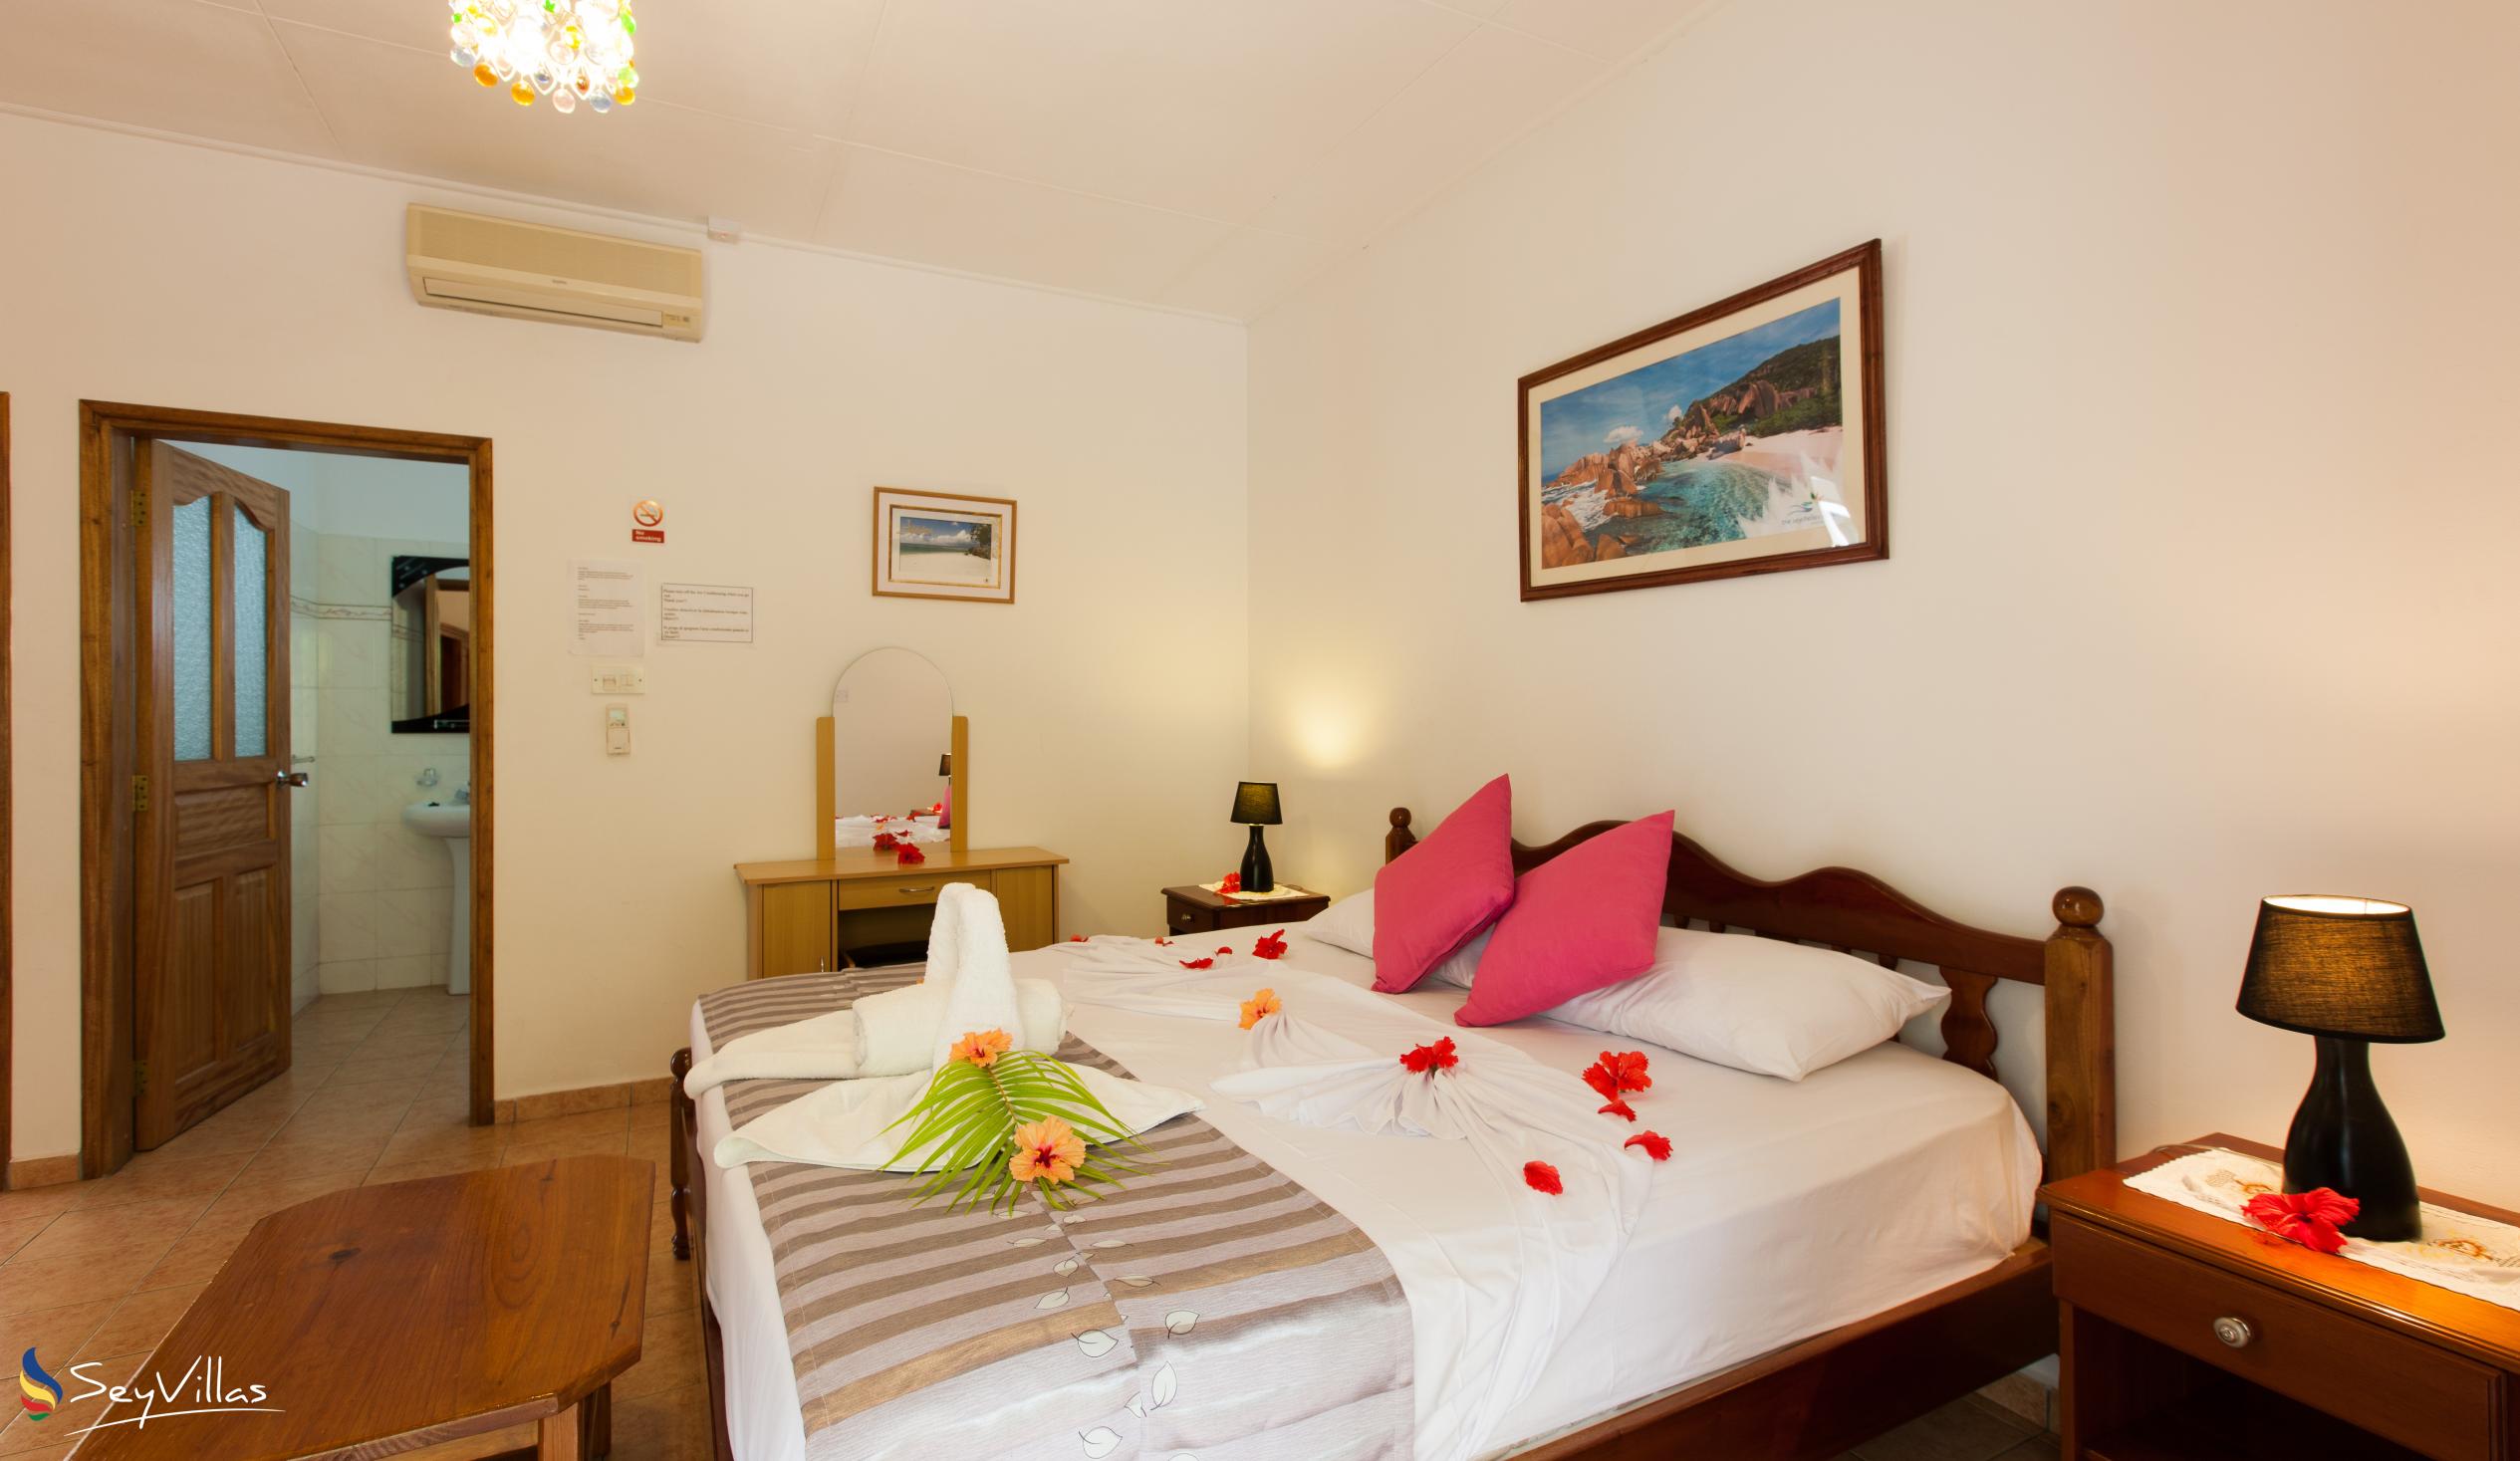 Photo 59: Acquario Villa - 1-Bedroom Apartment - Praslin (Seychelles)